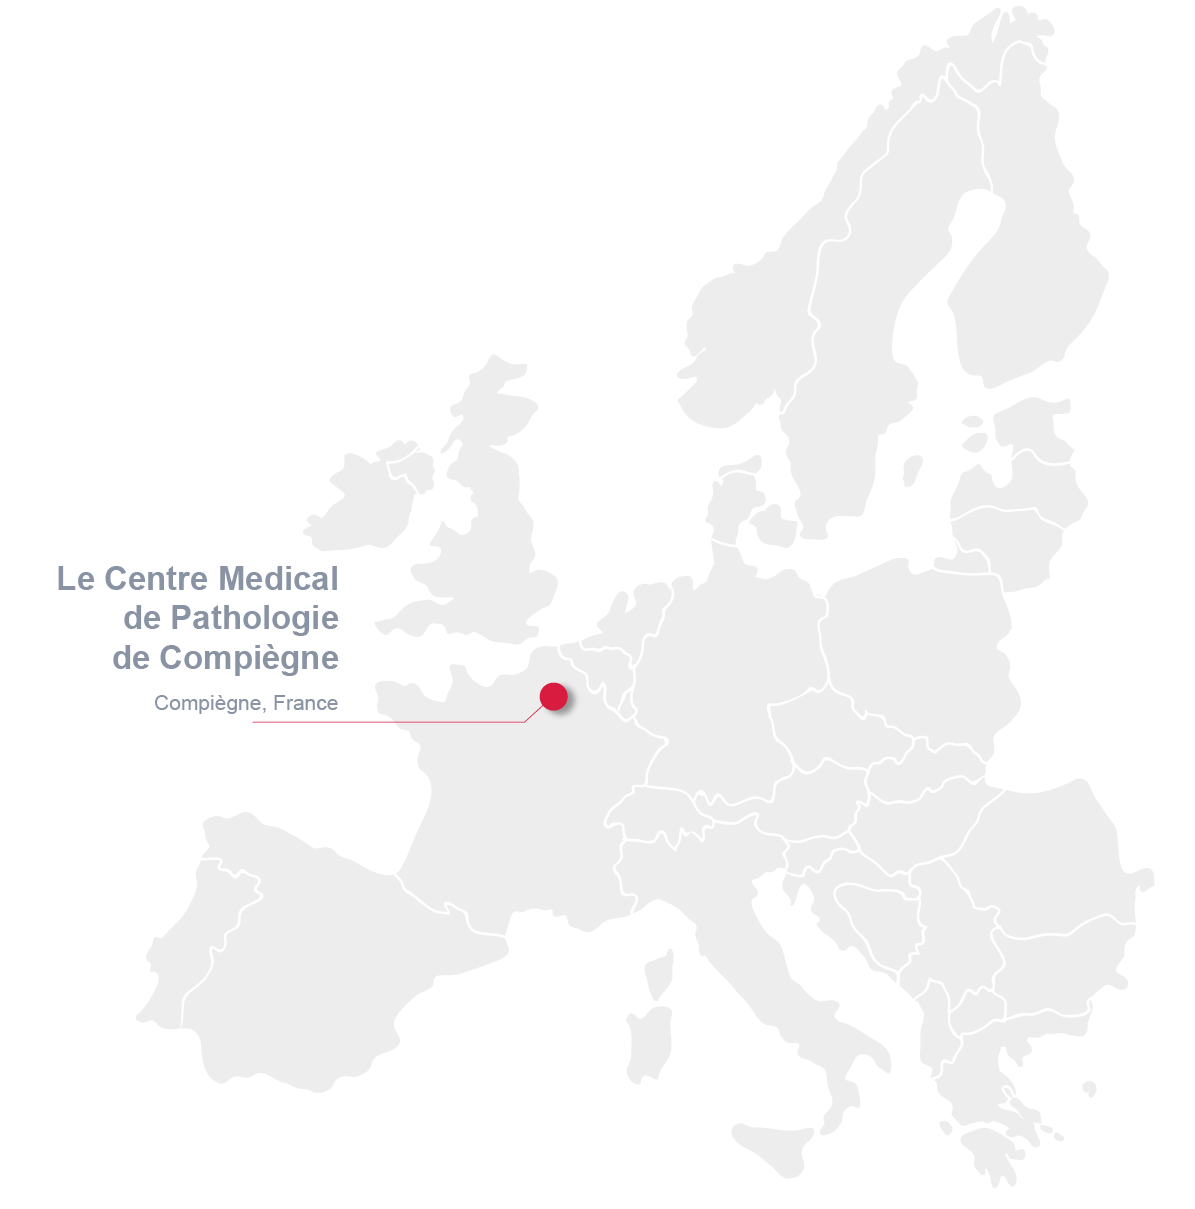 Map of Le Centre Médical de Pathologie, Compiègne, France